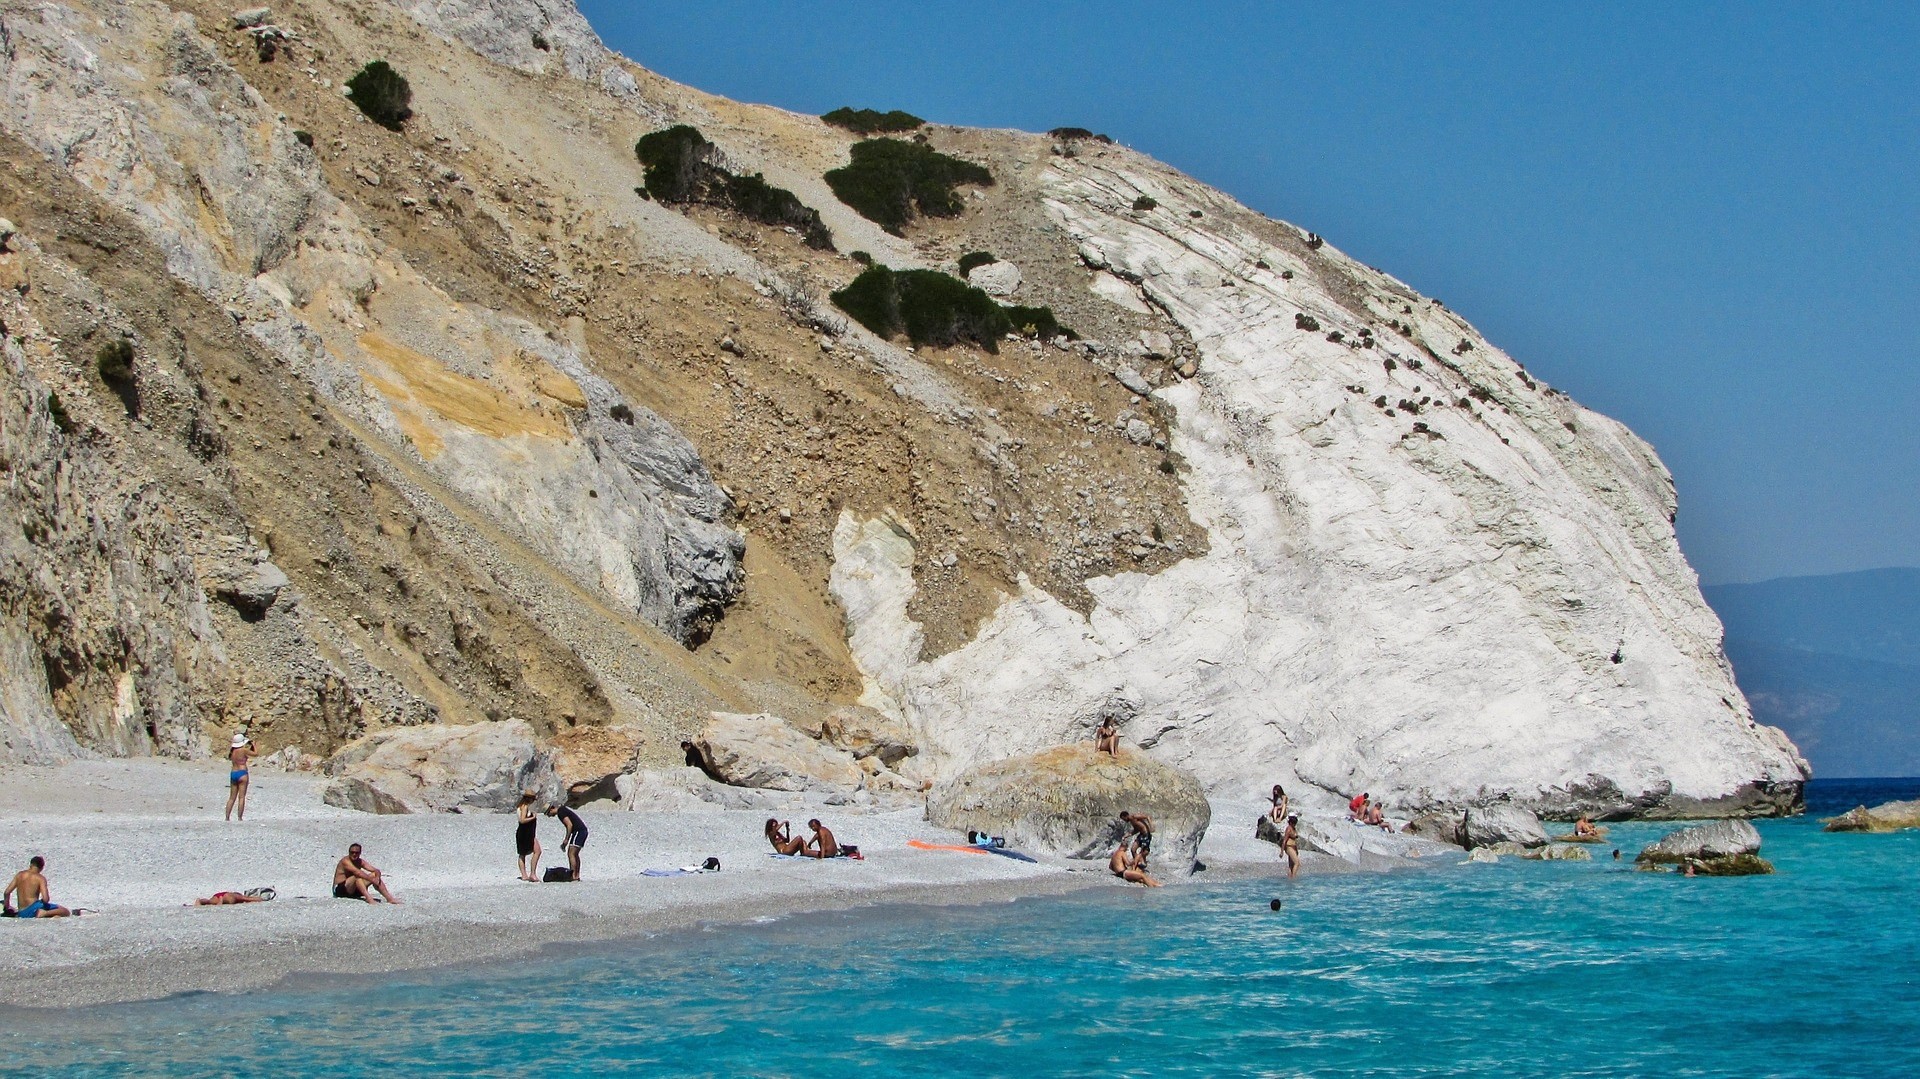 kamienista biała plaża oblana turkusowymi wodami, na której wypoczywają ludzie na tle biało-kawowego wzgórza